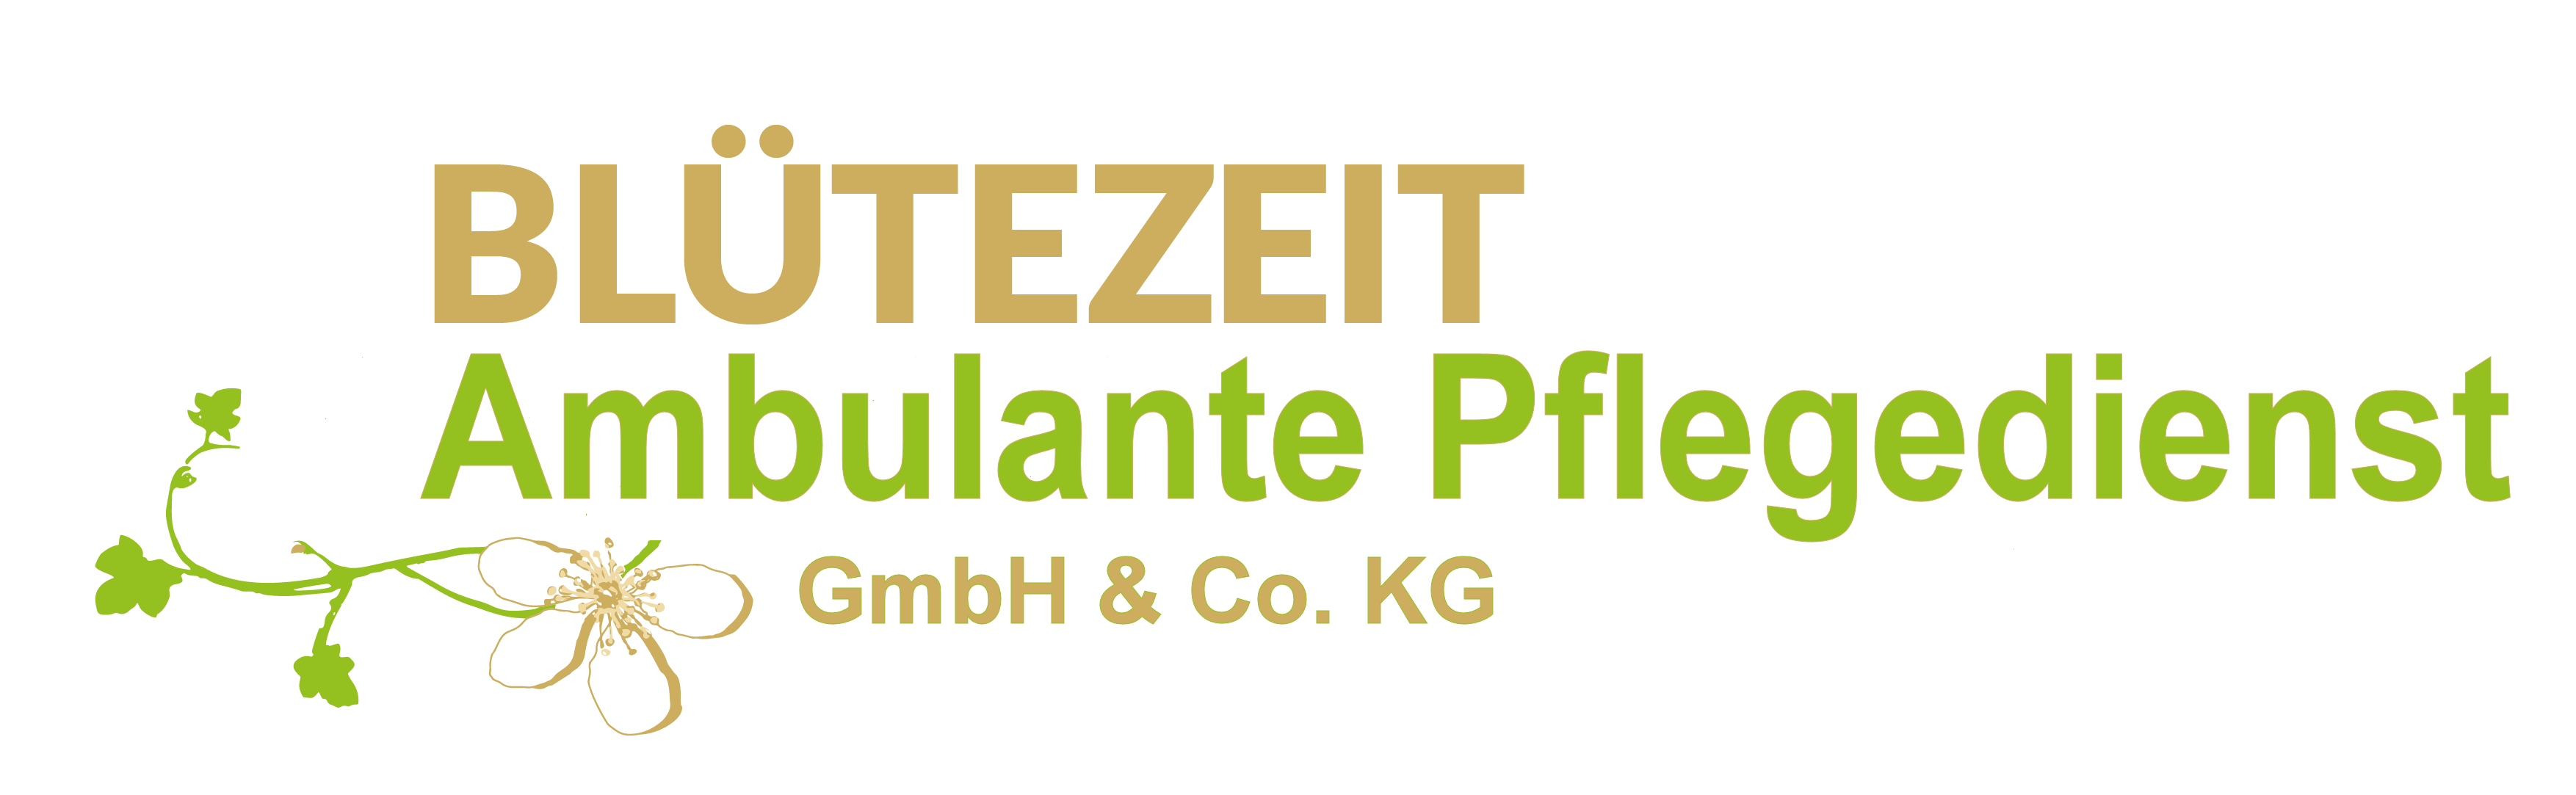 Blütezeit Ambulante Pflegedienst GmbH + Co. KG